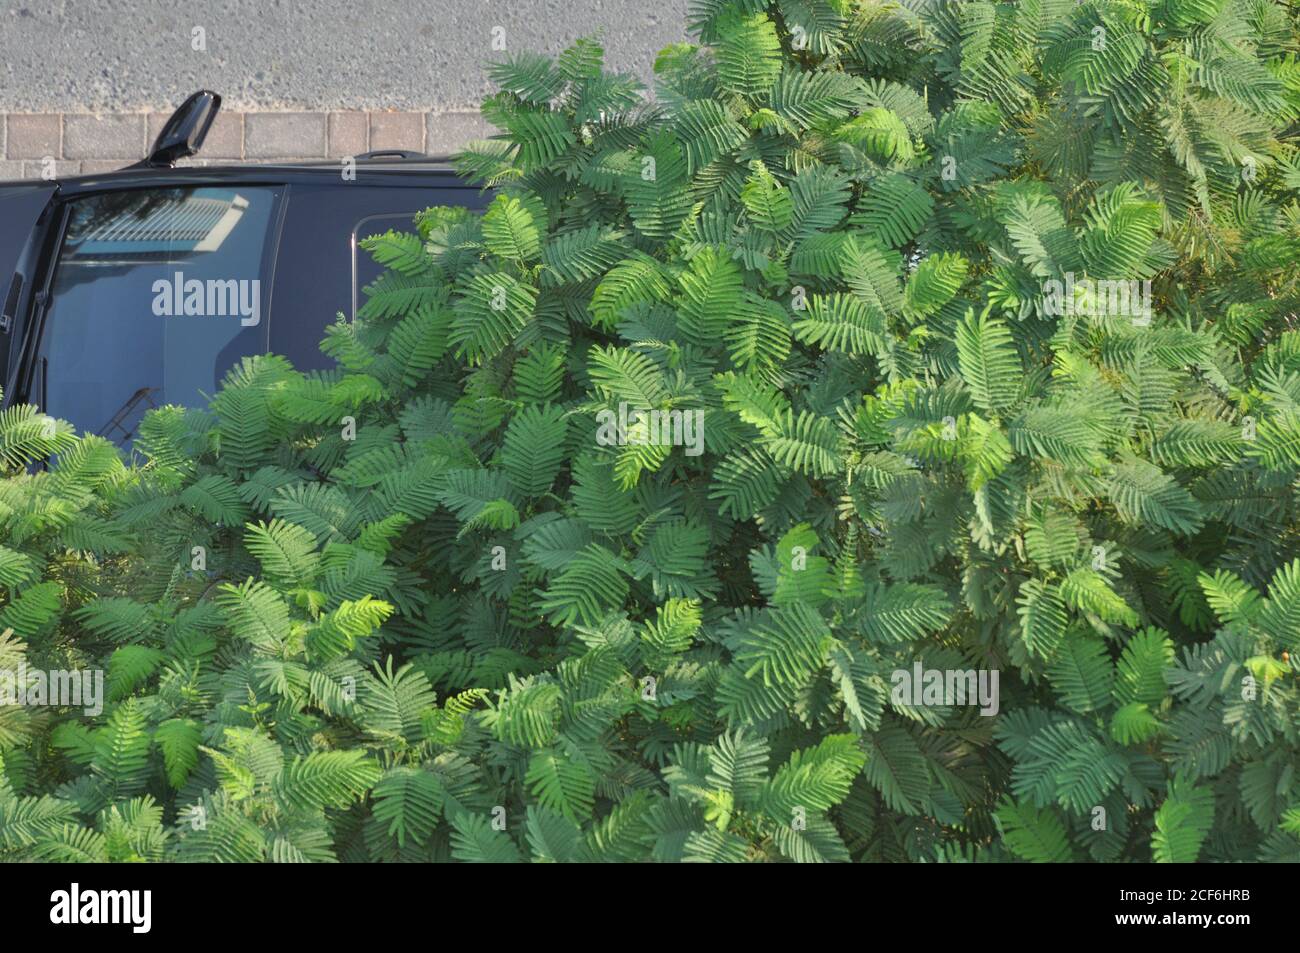 Städtischer Beton Dschungelbaum. Auto geparkt unter Smaragd und olivgrünen Baum, zeigt Spiegelung des Gebäudes im Fenster. Stockfoto